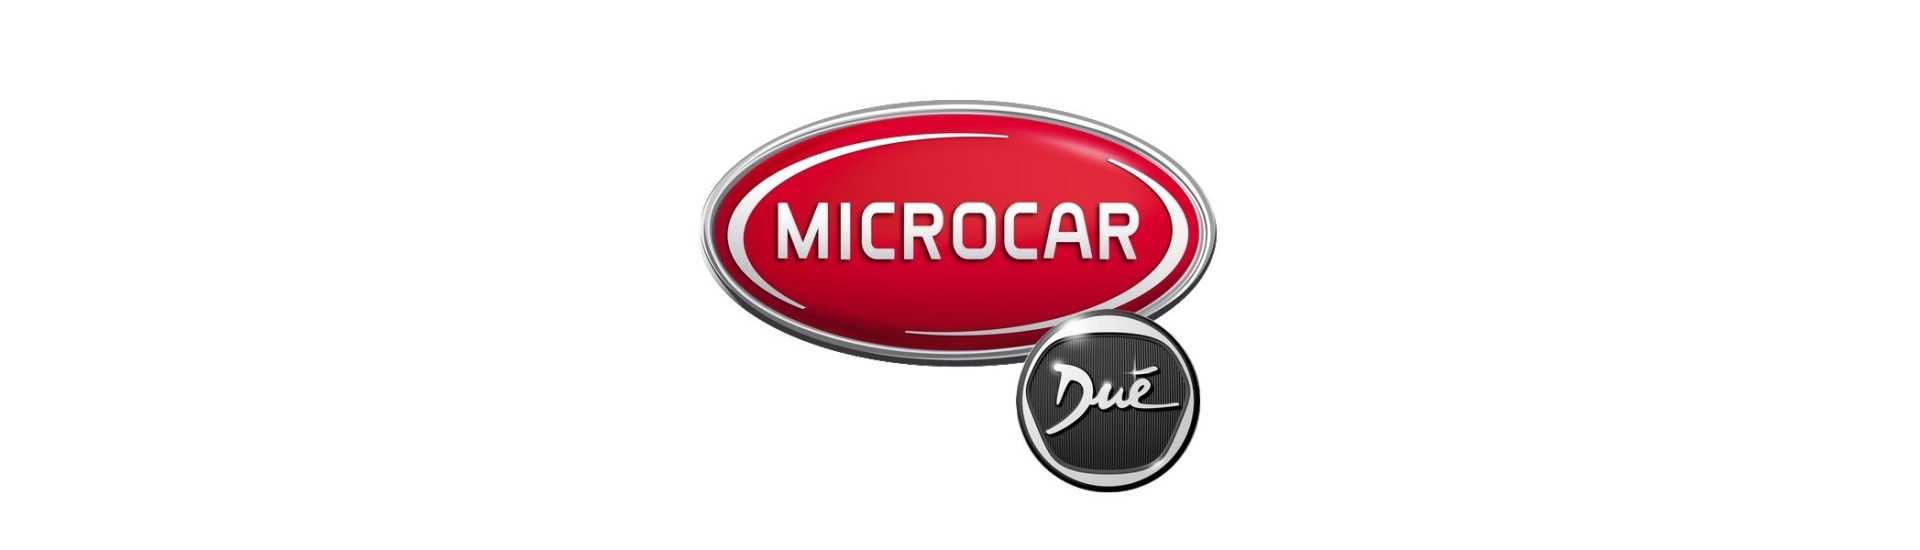 Caja de seguridad al mejor precio coche sin permiso Microcar Dué